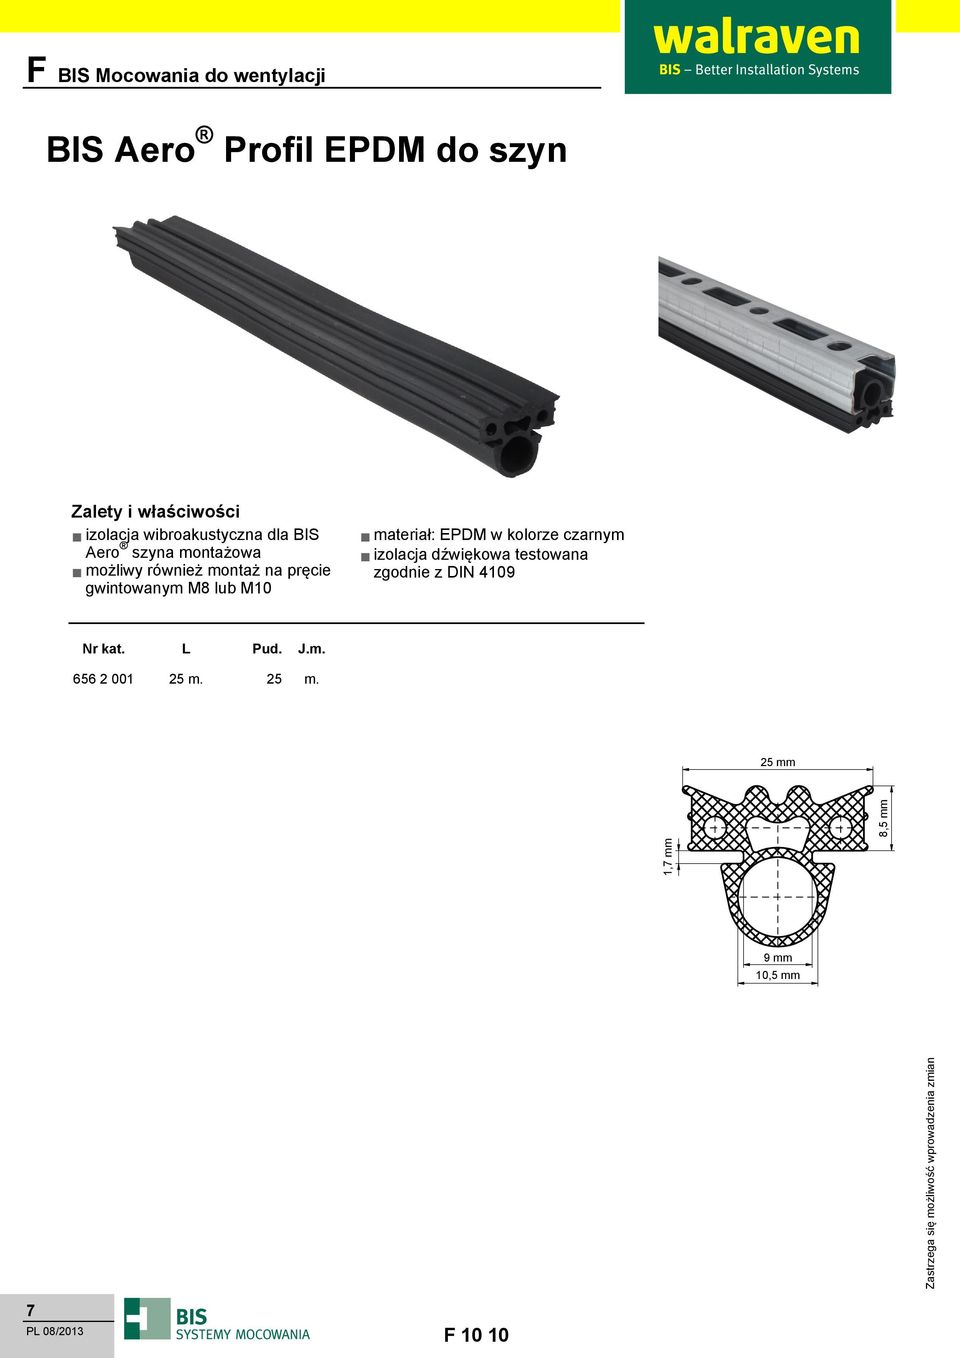 M10 materiał: EPM w kolorze czarnym izolacja dźwiękowa testowana zgodnie z IN 4109